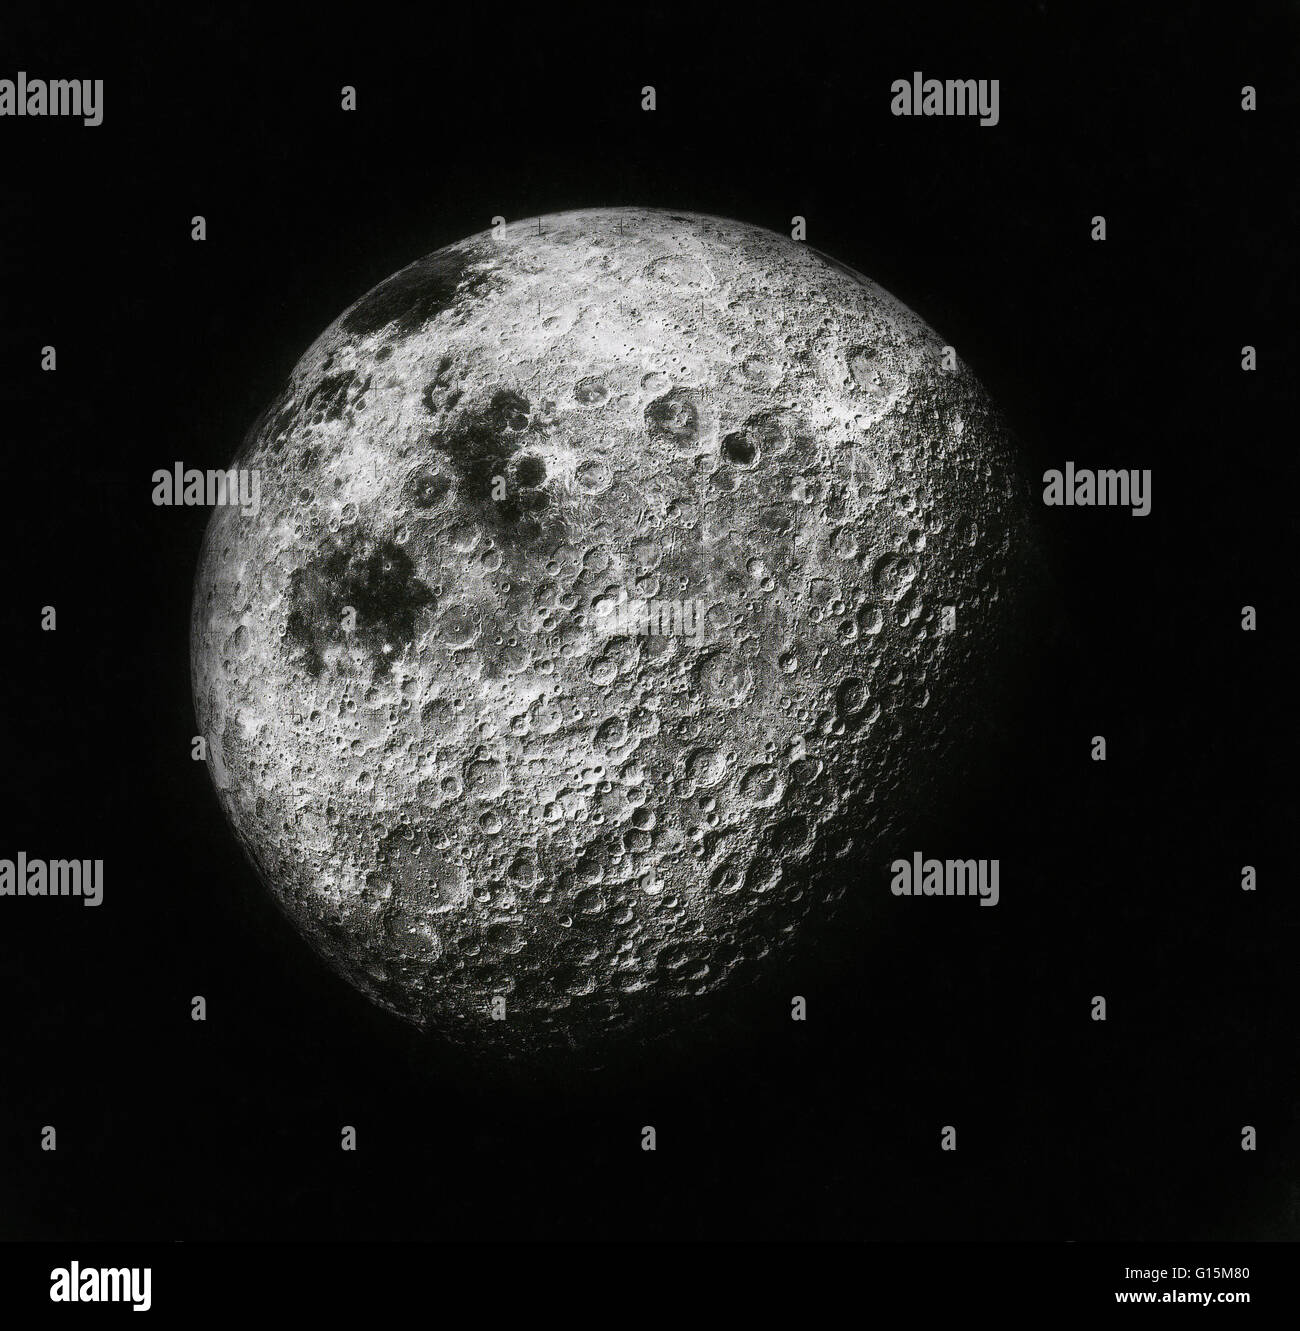 La luna da mille miglia di distanza, mostrando il farside highlands e fotografata da Ken Mattingly della missione Apollo 16 nel 1972. Apollo 16 è stata la decima missione con equipaggio gli Stati Uniti Apollo programma spaziale e la prima a terra nelle highlands lunari. Foto Stock